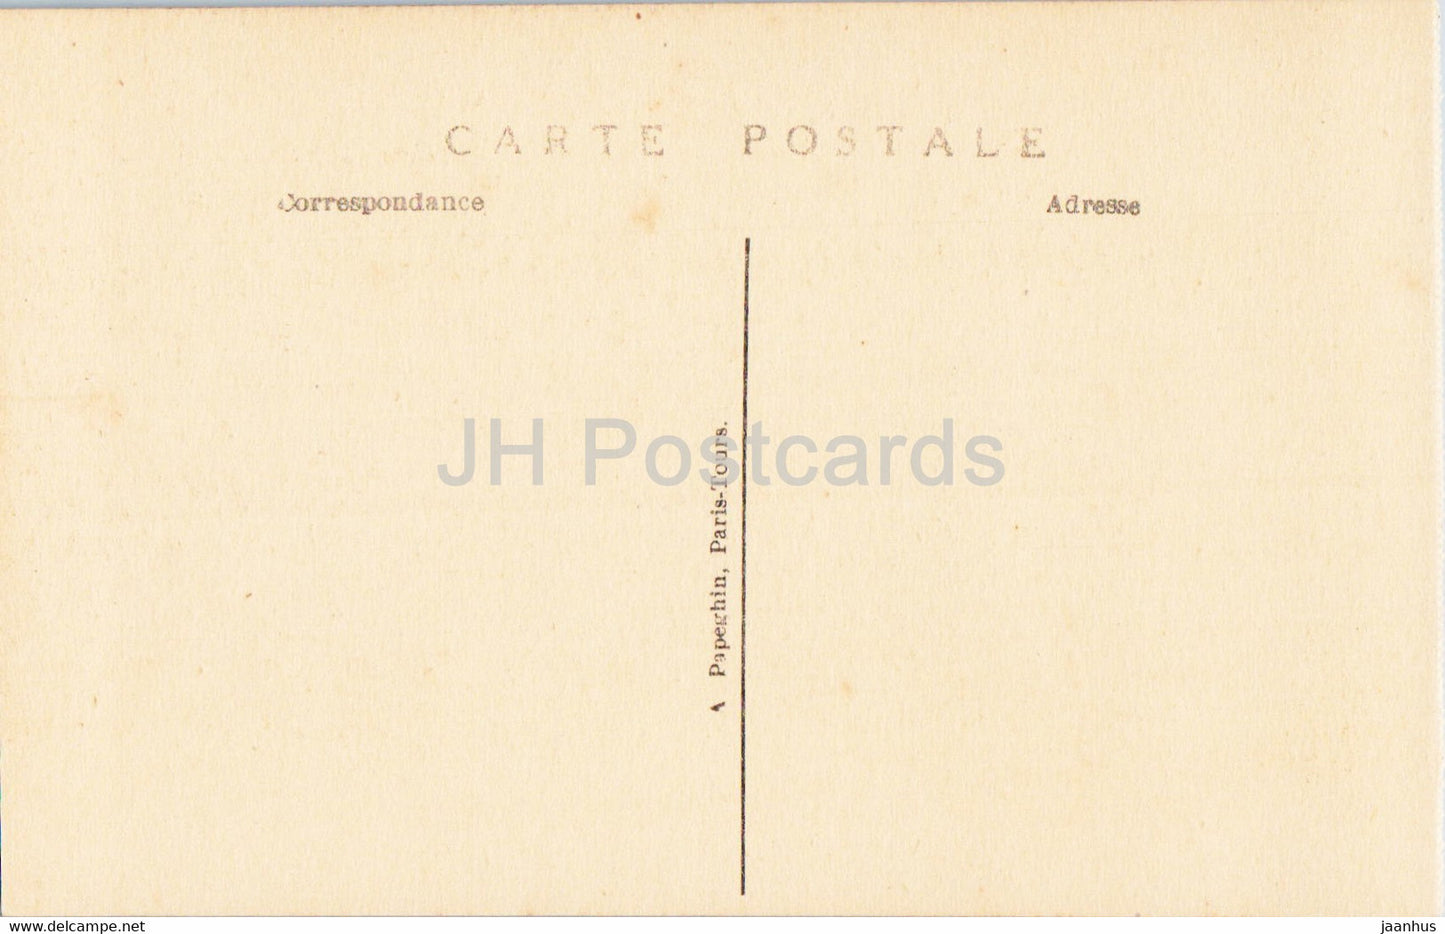 Parc de Versailles - La Colonnade de Mansart et l'enlevement de Prosperine par Girardon - old postcard - France - unused